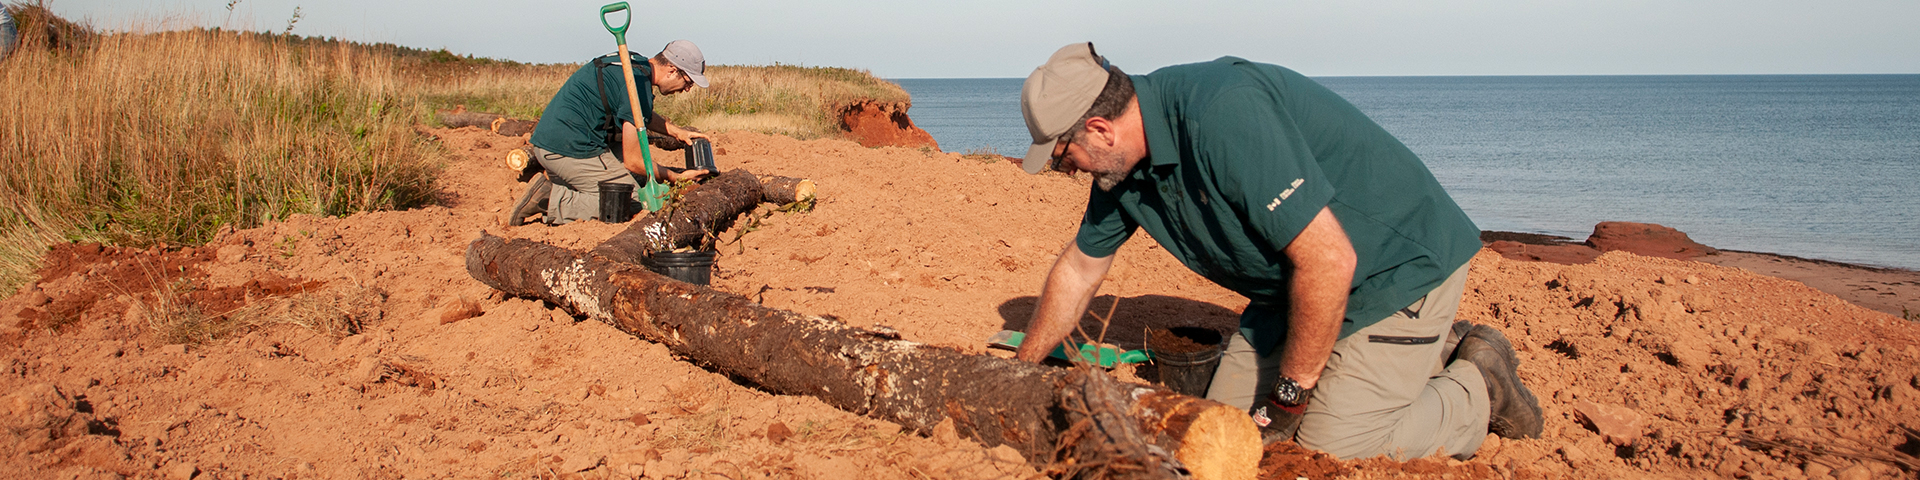 Les parkies plantent des arbres au bord de l'océan pour reconstruire un krumholtz